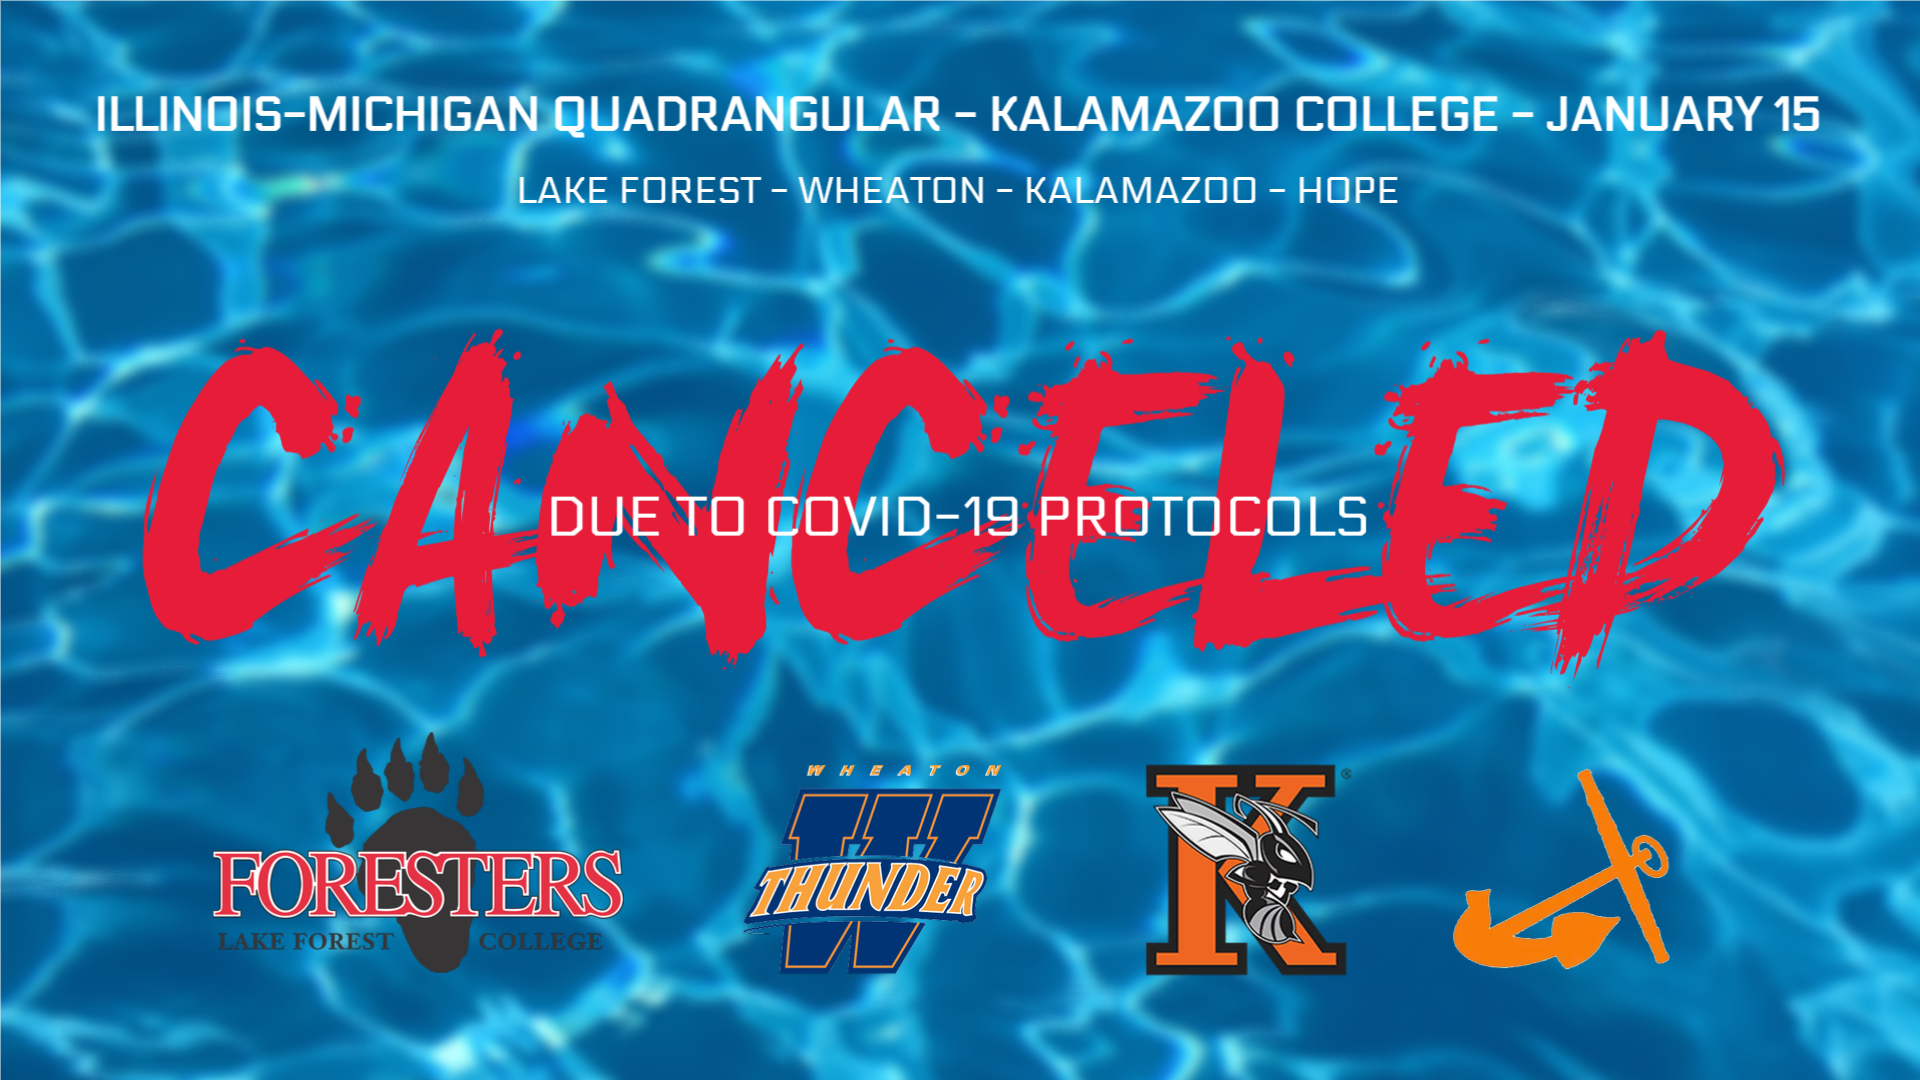 Saturday's Swimming & Diving Meet at Kalamazoo Canceled